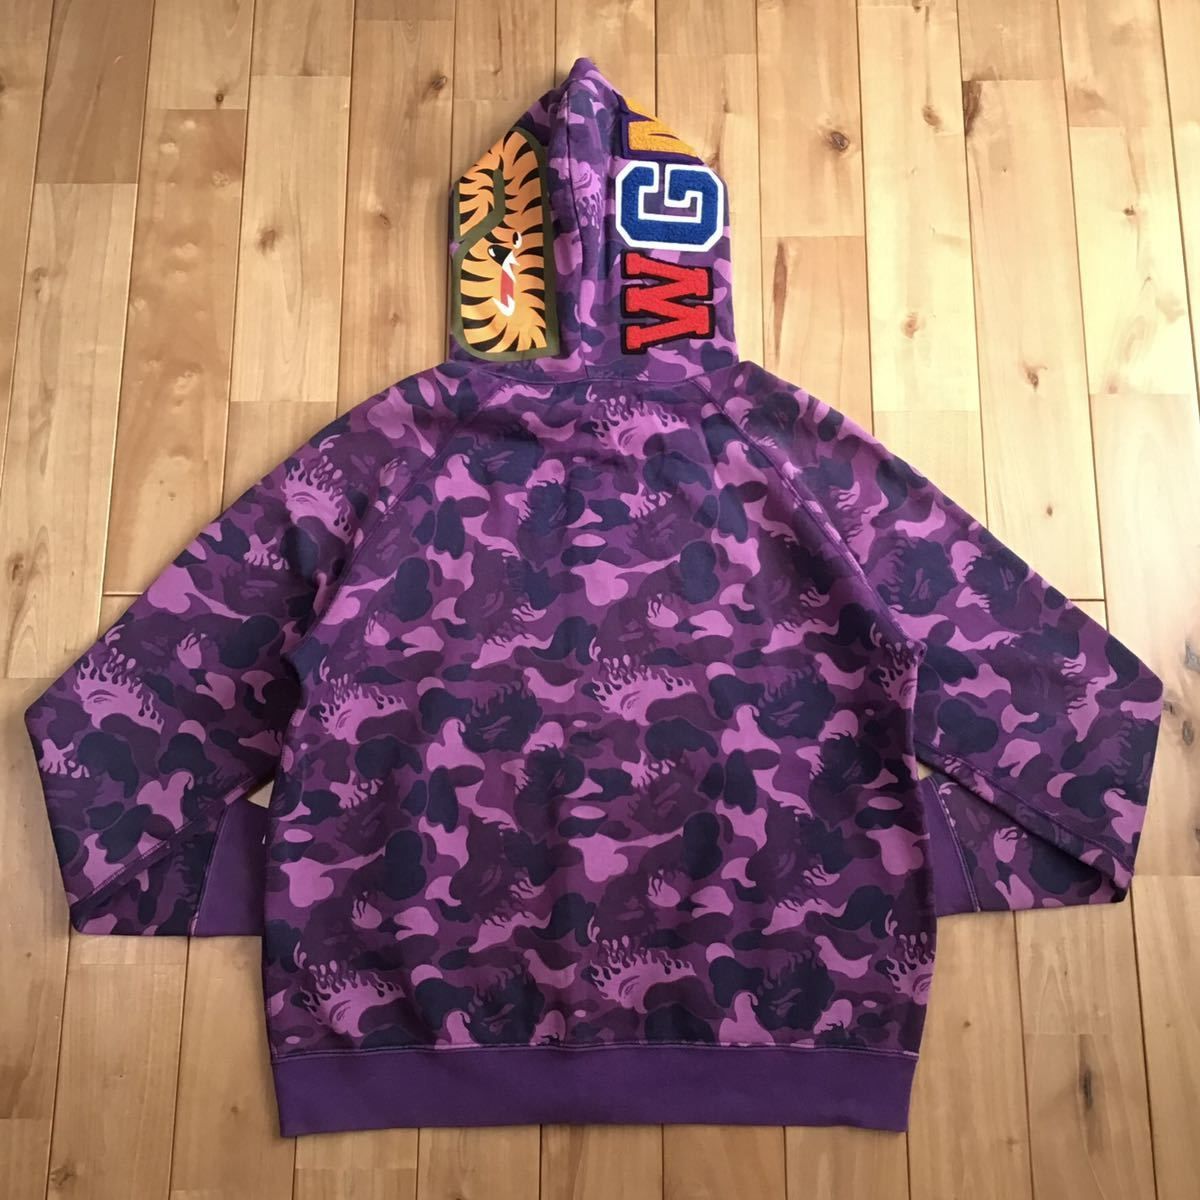 ★ムック限定★ Fire camo シャーク パーカー Sサイズ shark full zip hoodie a bathing ape BAPE  purple camo エイプ ベイプ NIGO